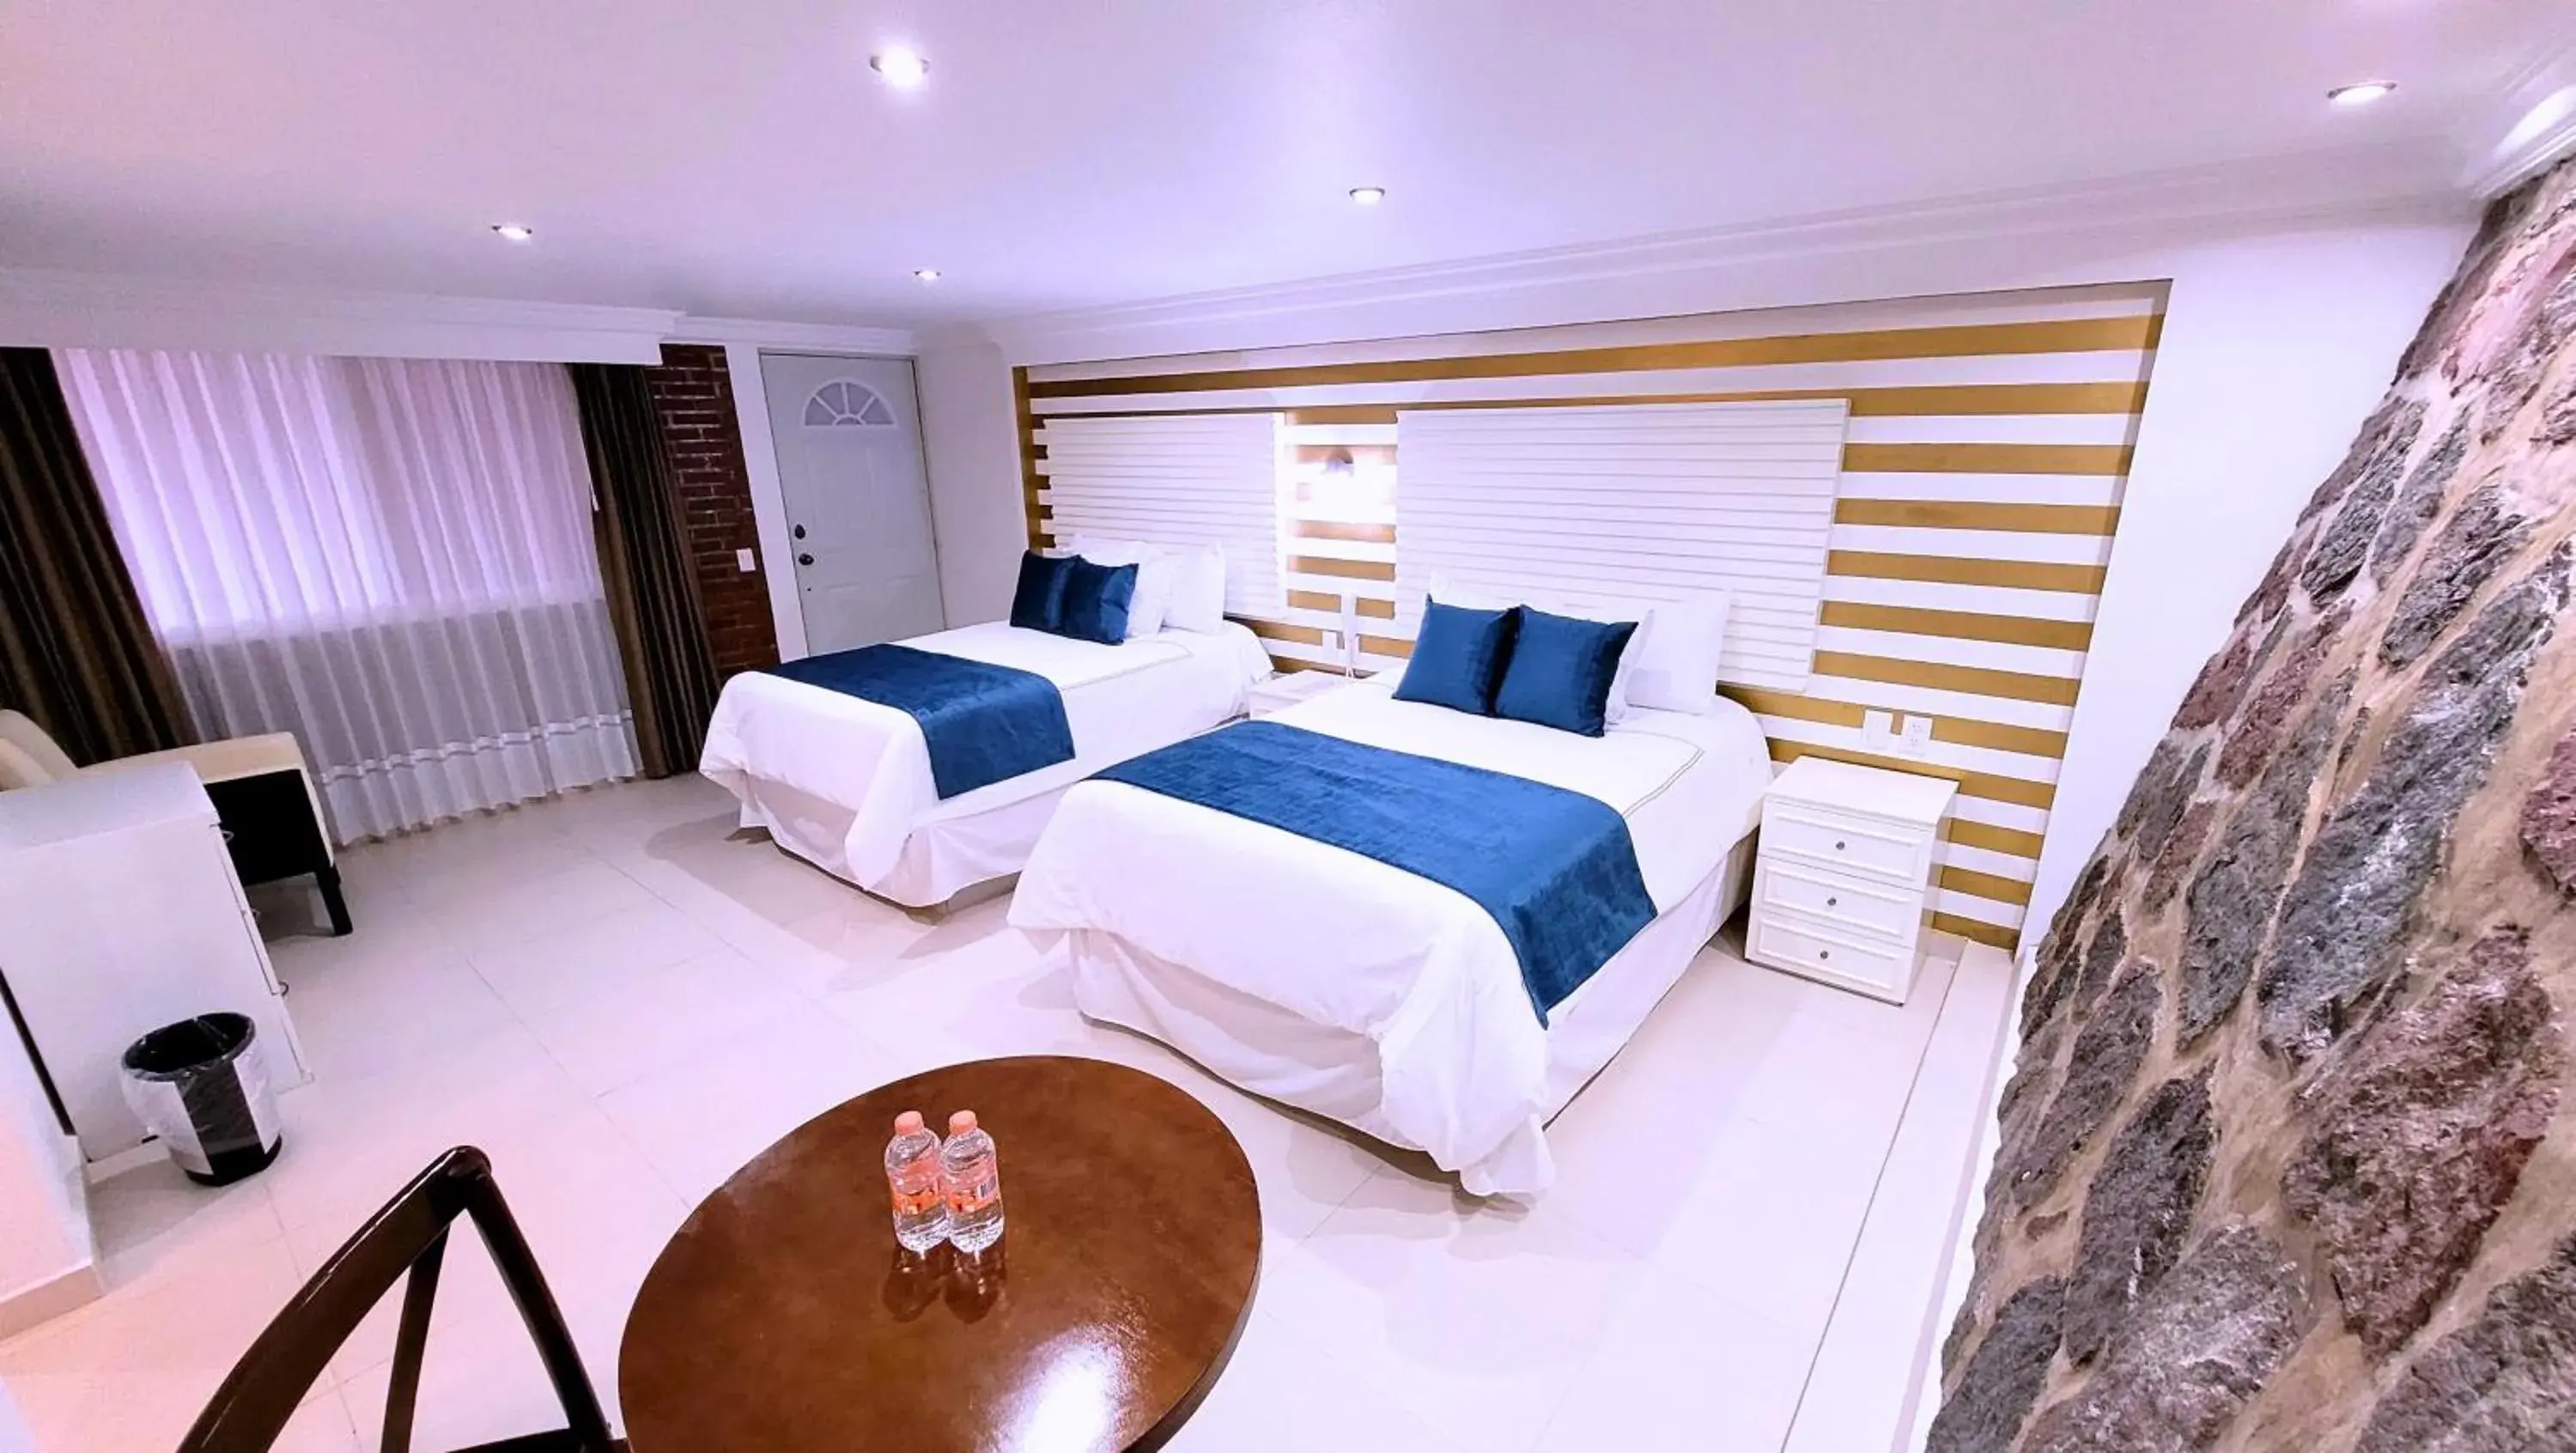 Bed in Hotel Tierras Blancas